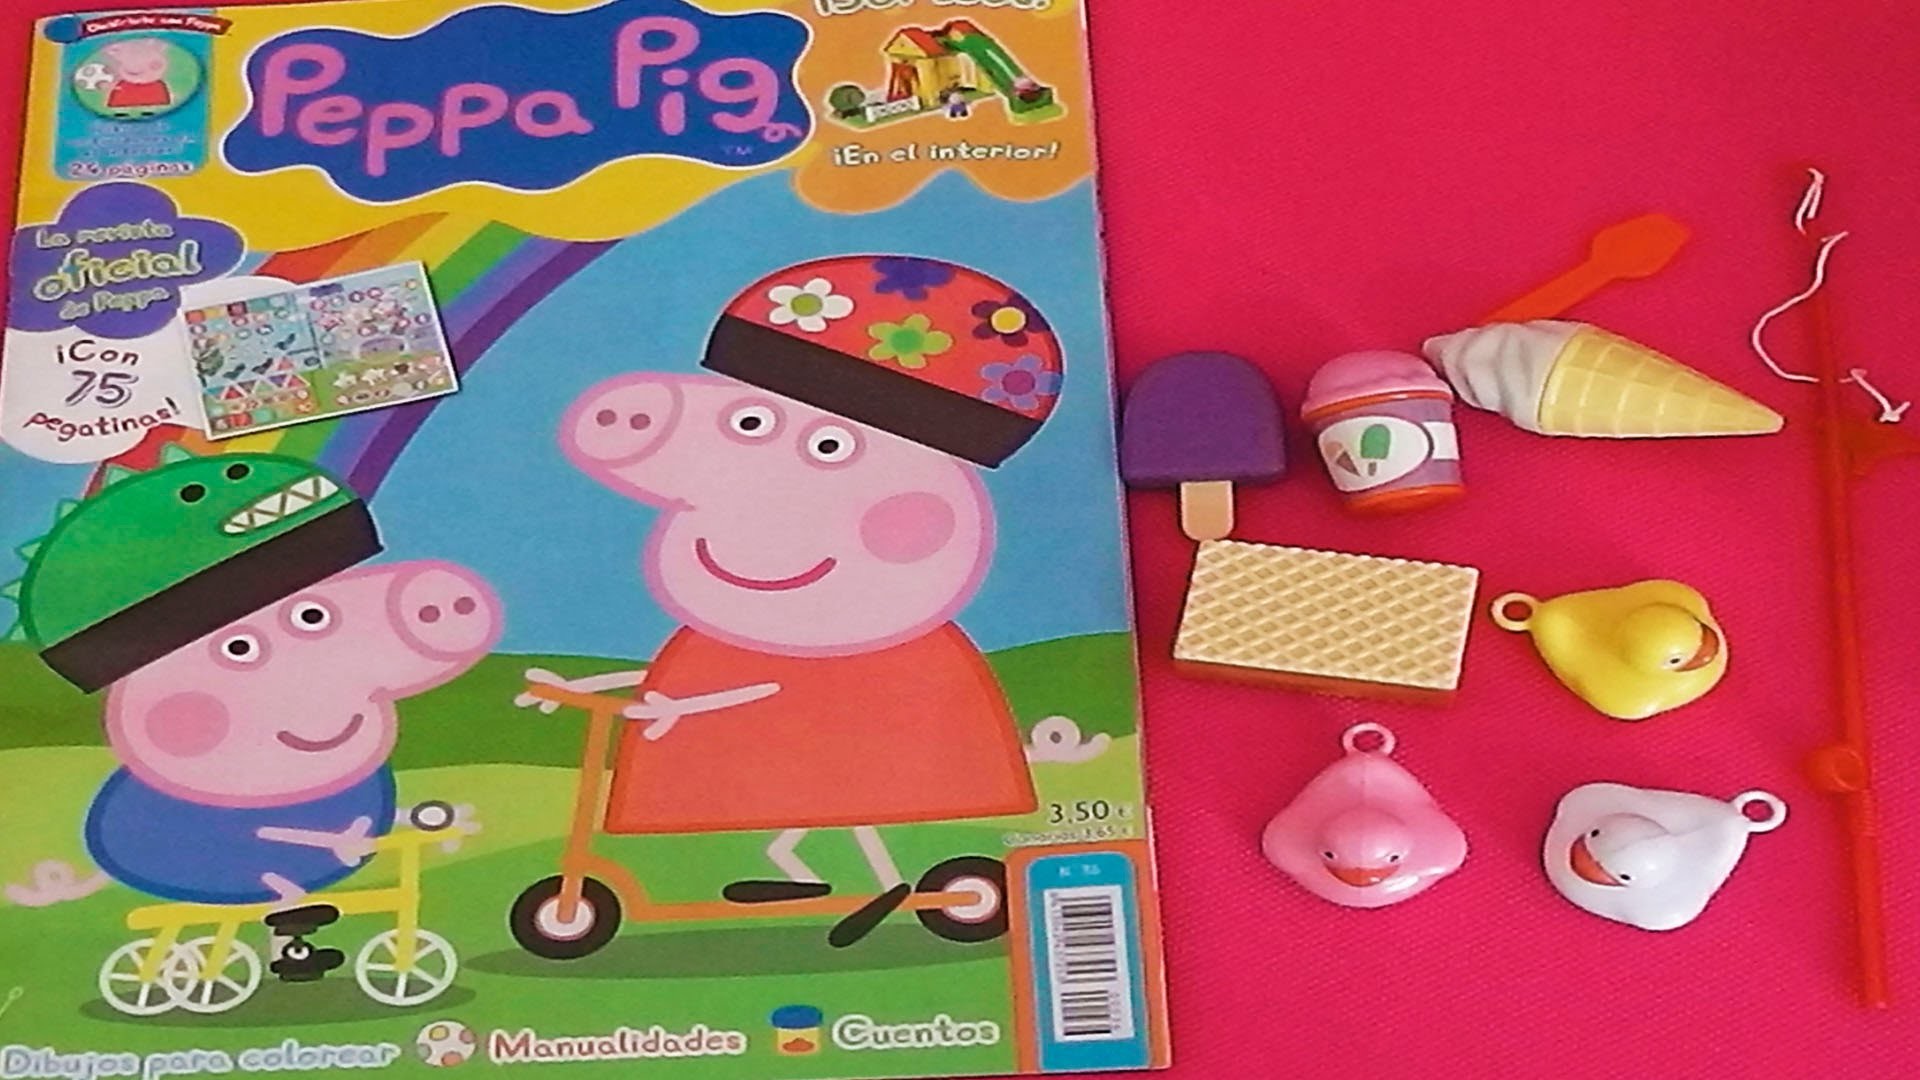 Revista Peppa Pig con muchos regalos, juguetes, manualidades, juegos, cuentos en español